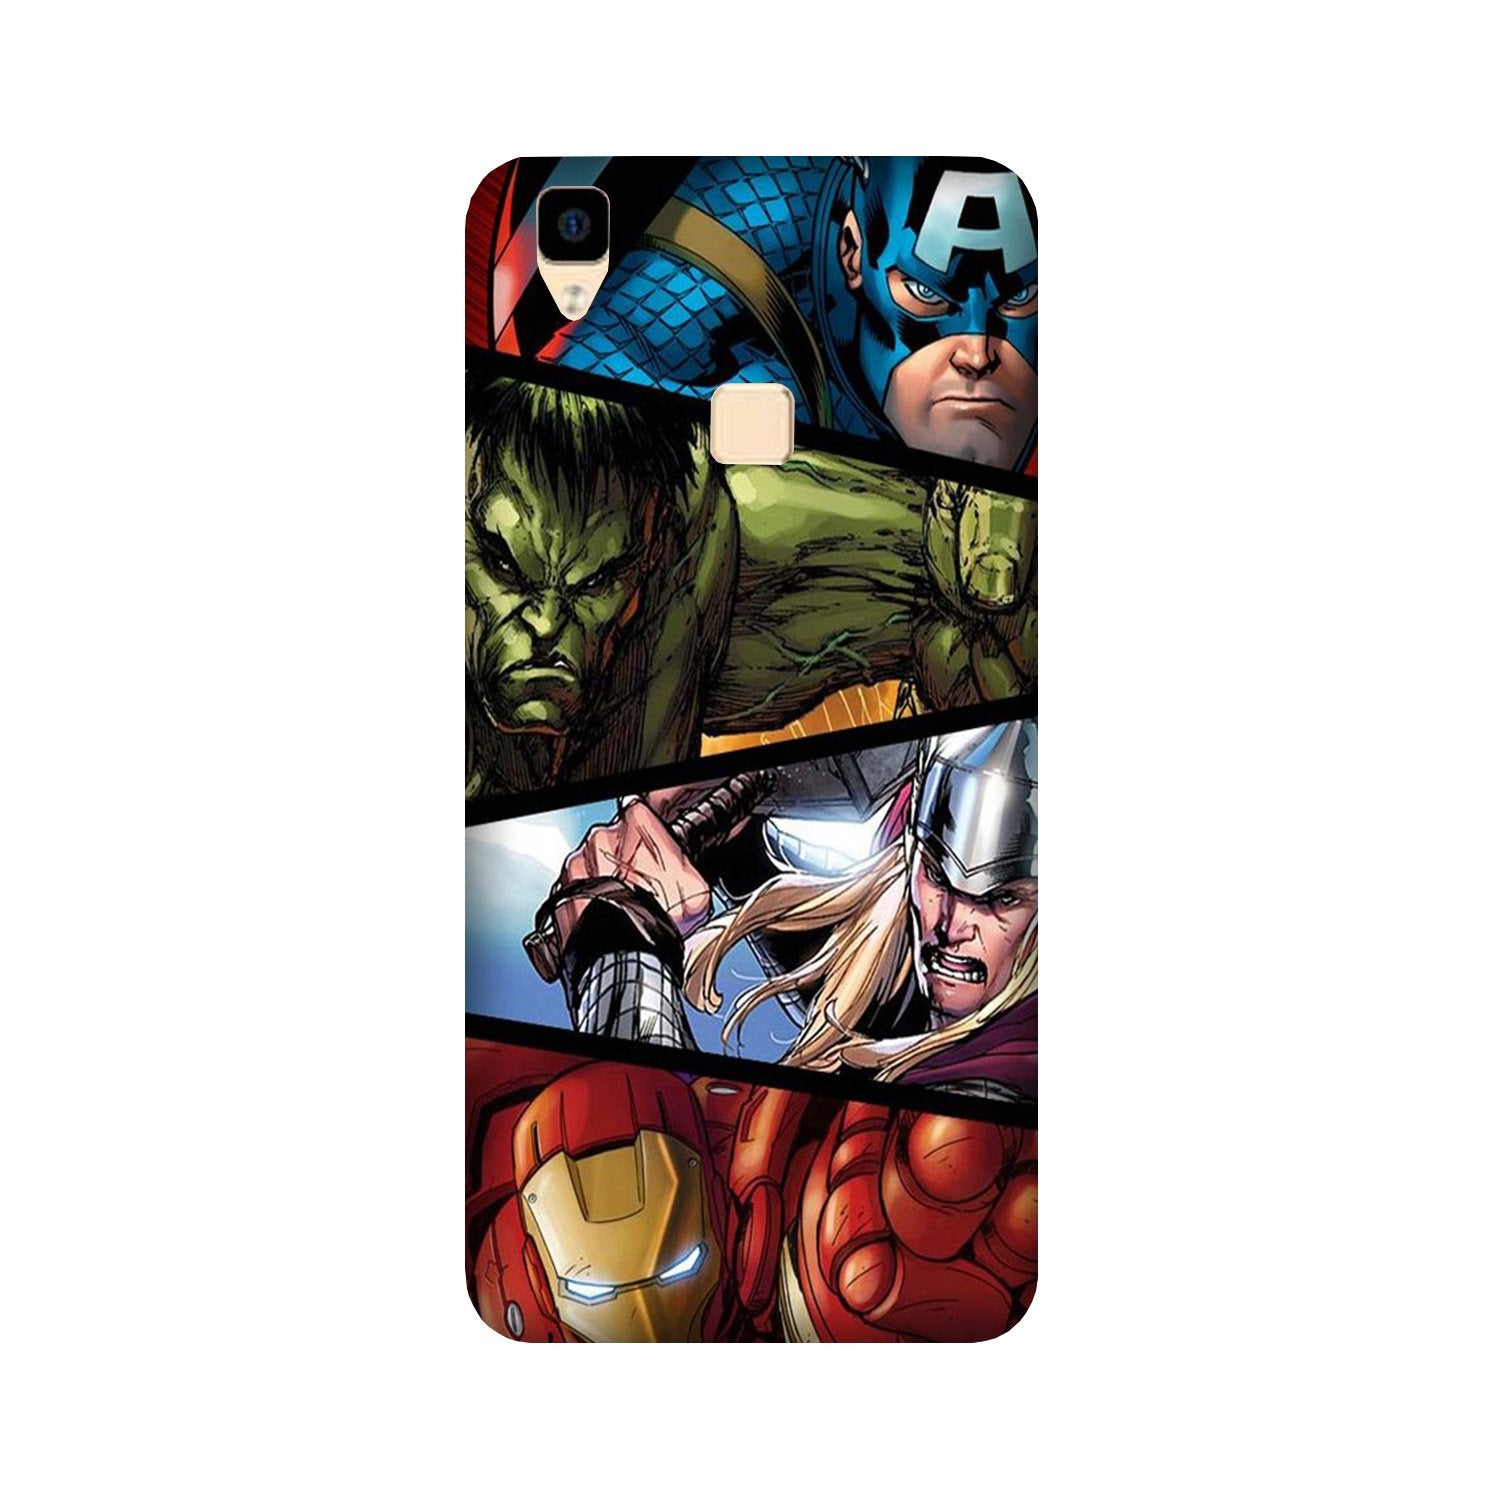 Avengers Superhero Case for Vivo V3 Max  (Design - 124)